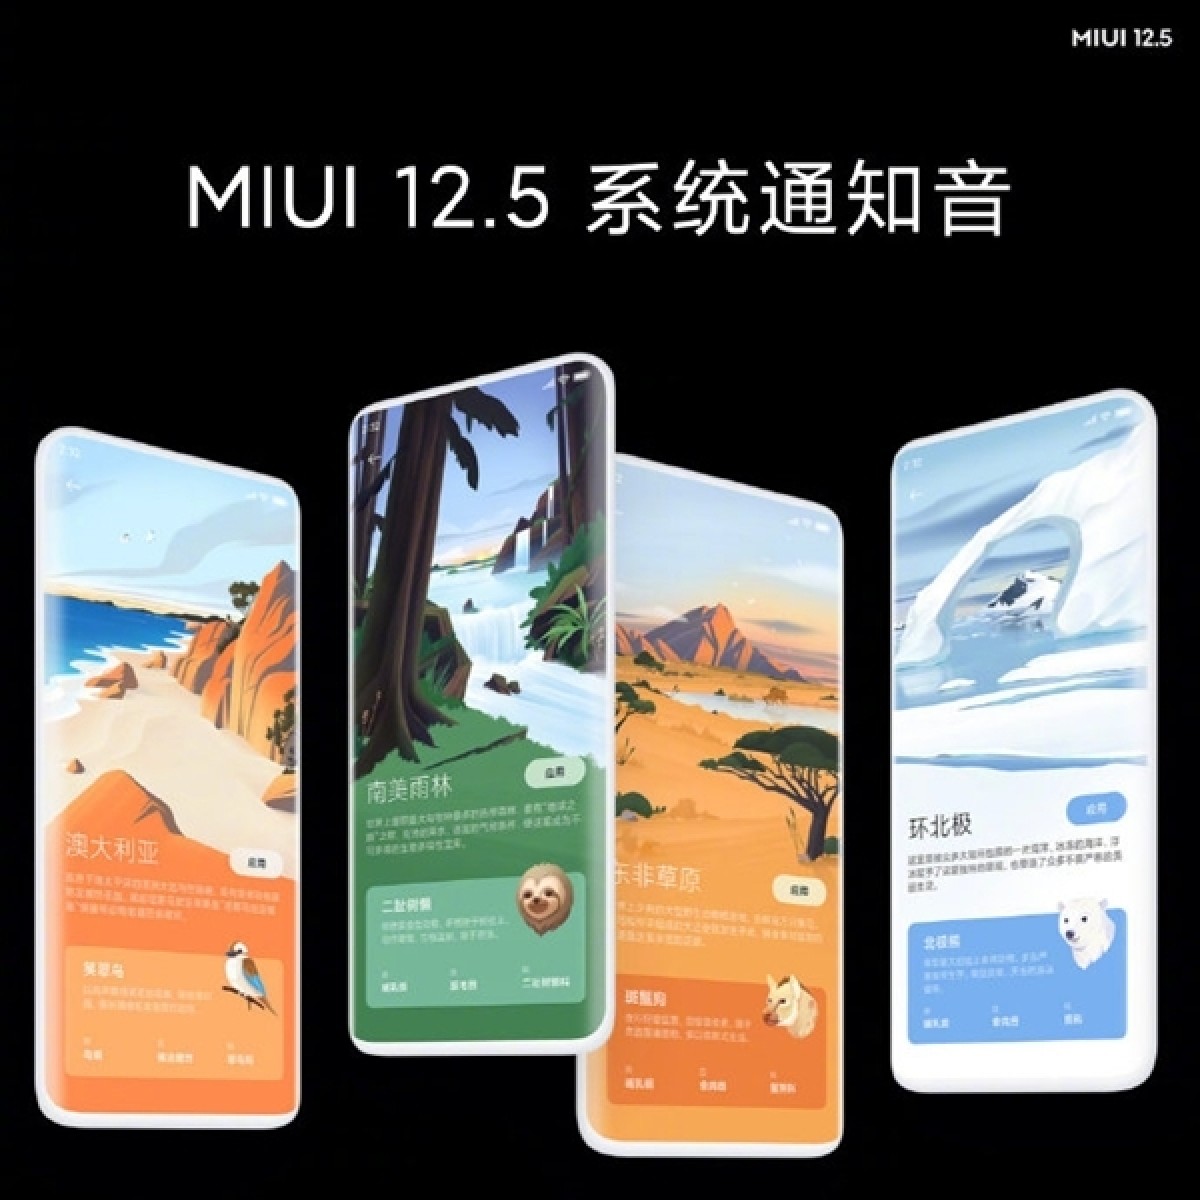 أعلنت شركة Xiaomi عن MIUI 12.5